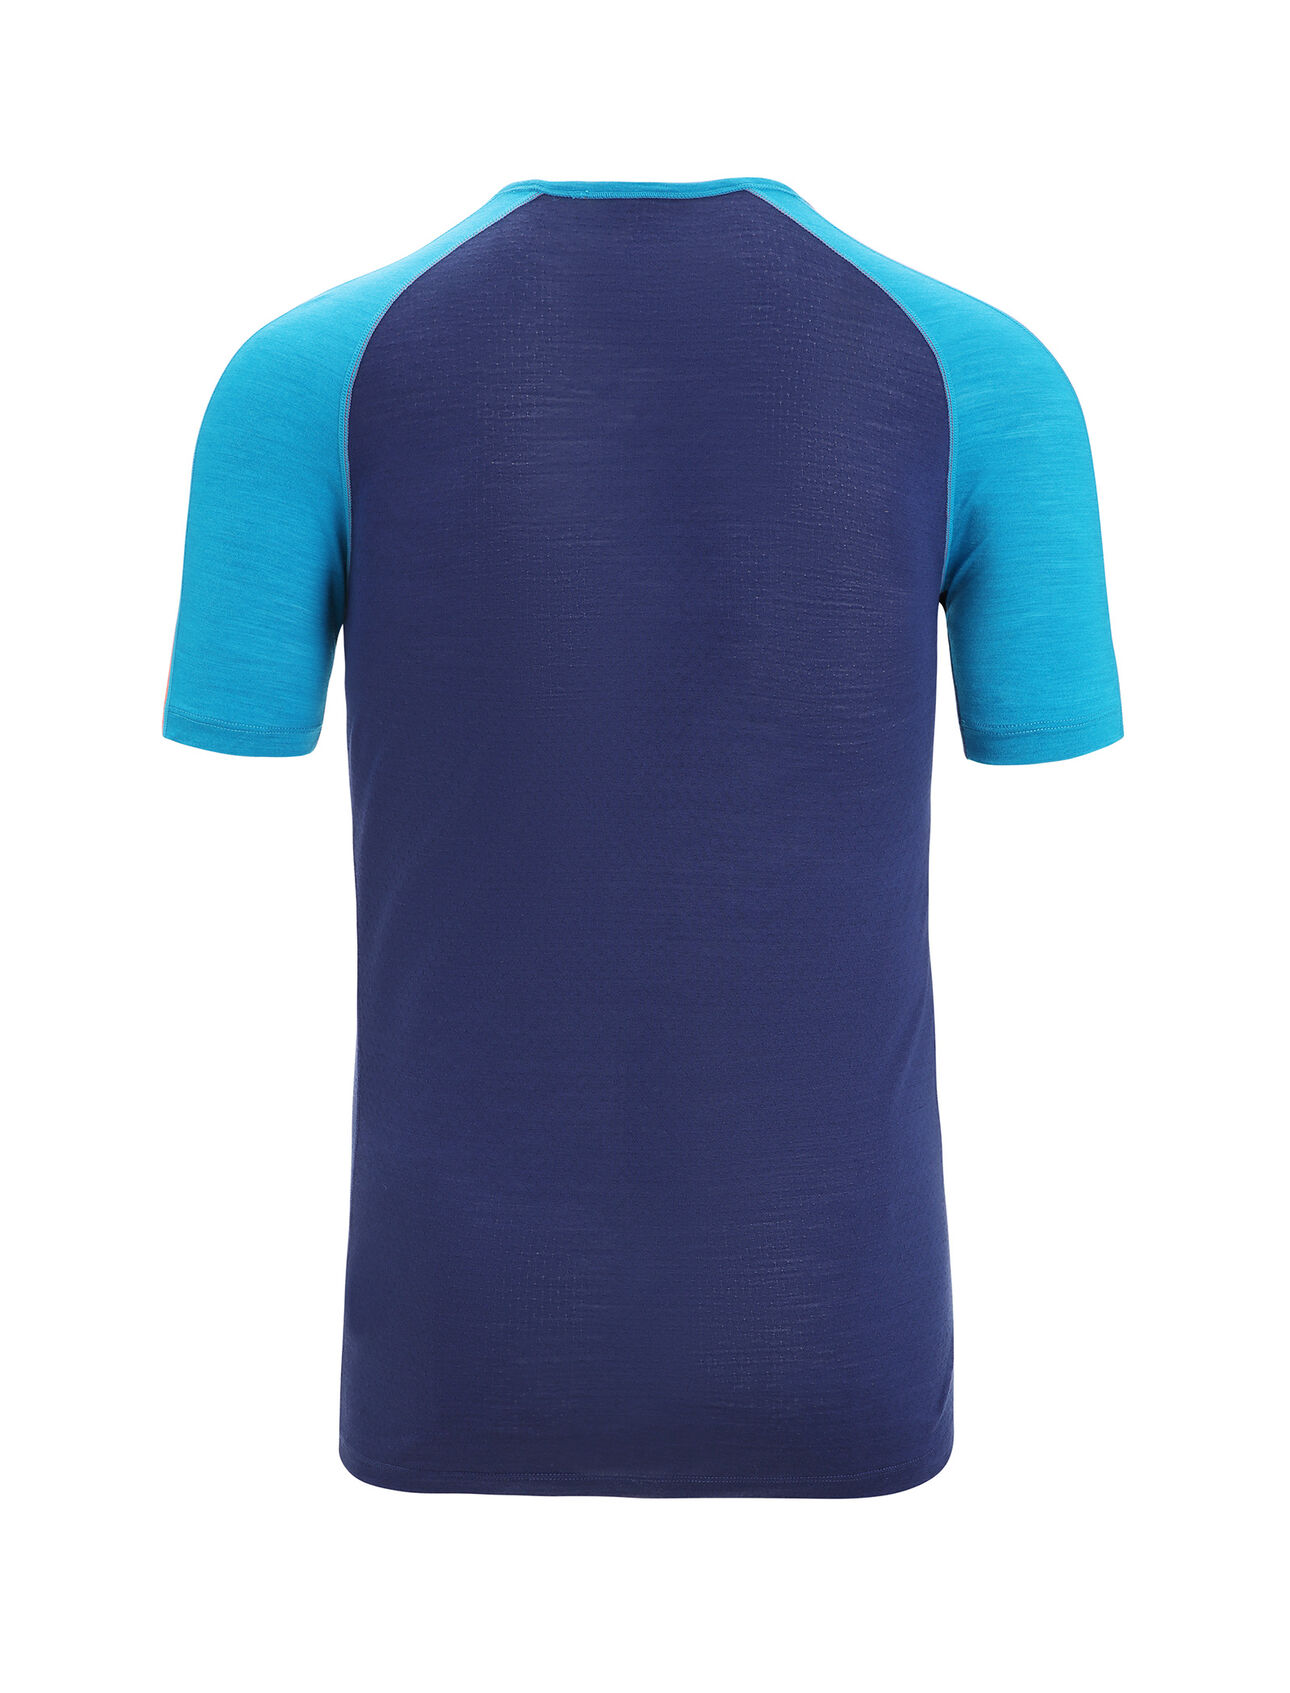 Icebreaker Zoneknit L/S Tee - Sport shirt Men's, Buy online